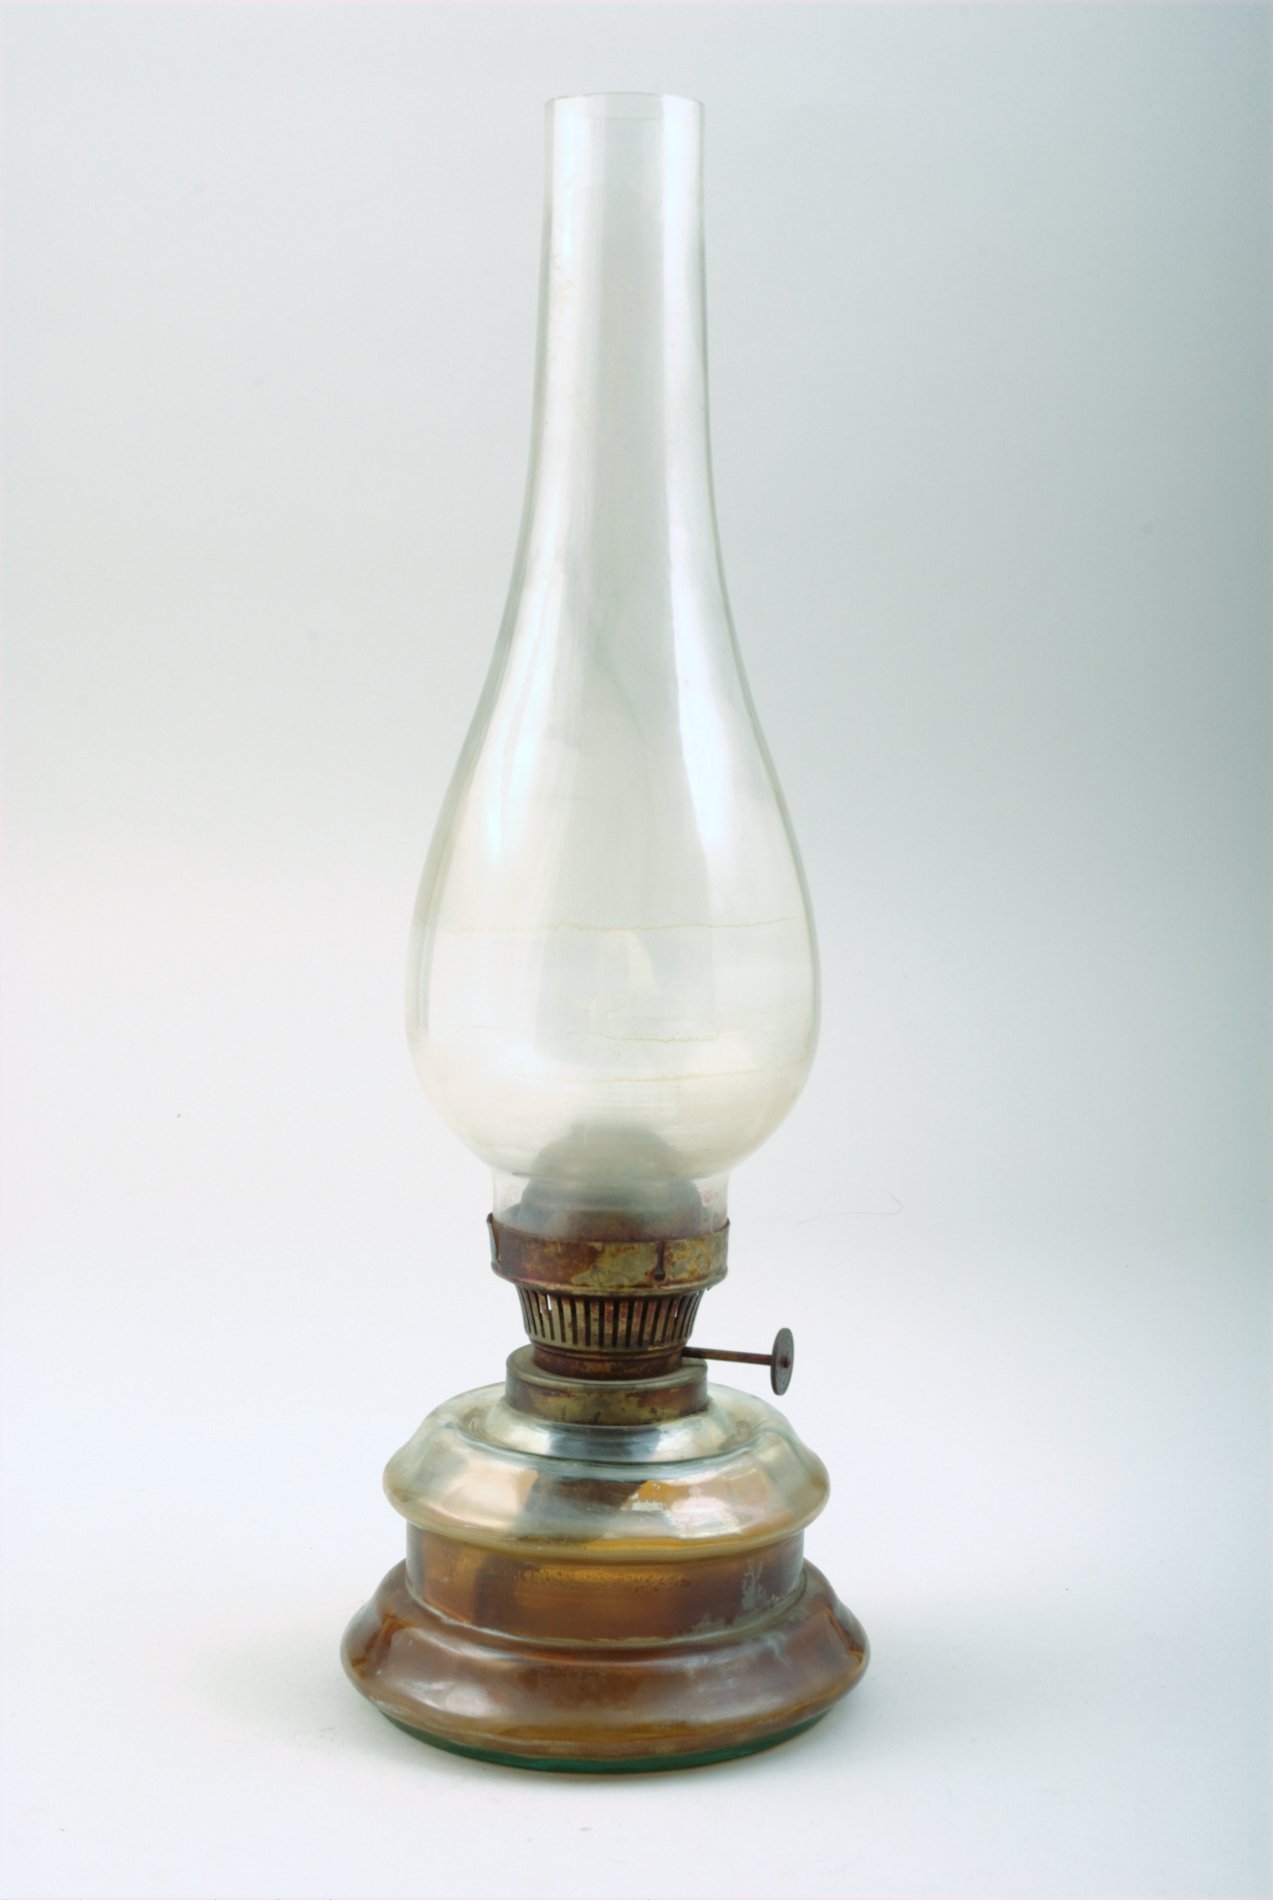 Petroleumlampe mit Glasschirm (Stiftung Domäne Dahlem - Landgut und Museum, Weiternutzung nur mit Genehmigung des Museums CC BY-NC-SA)